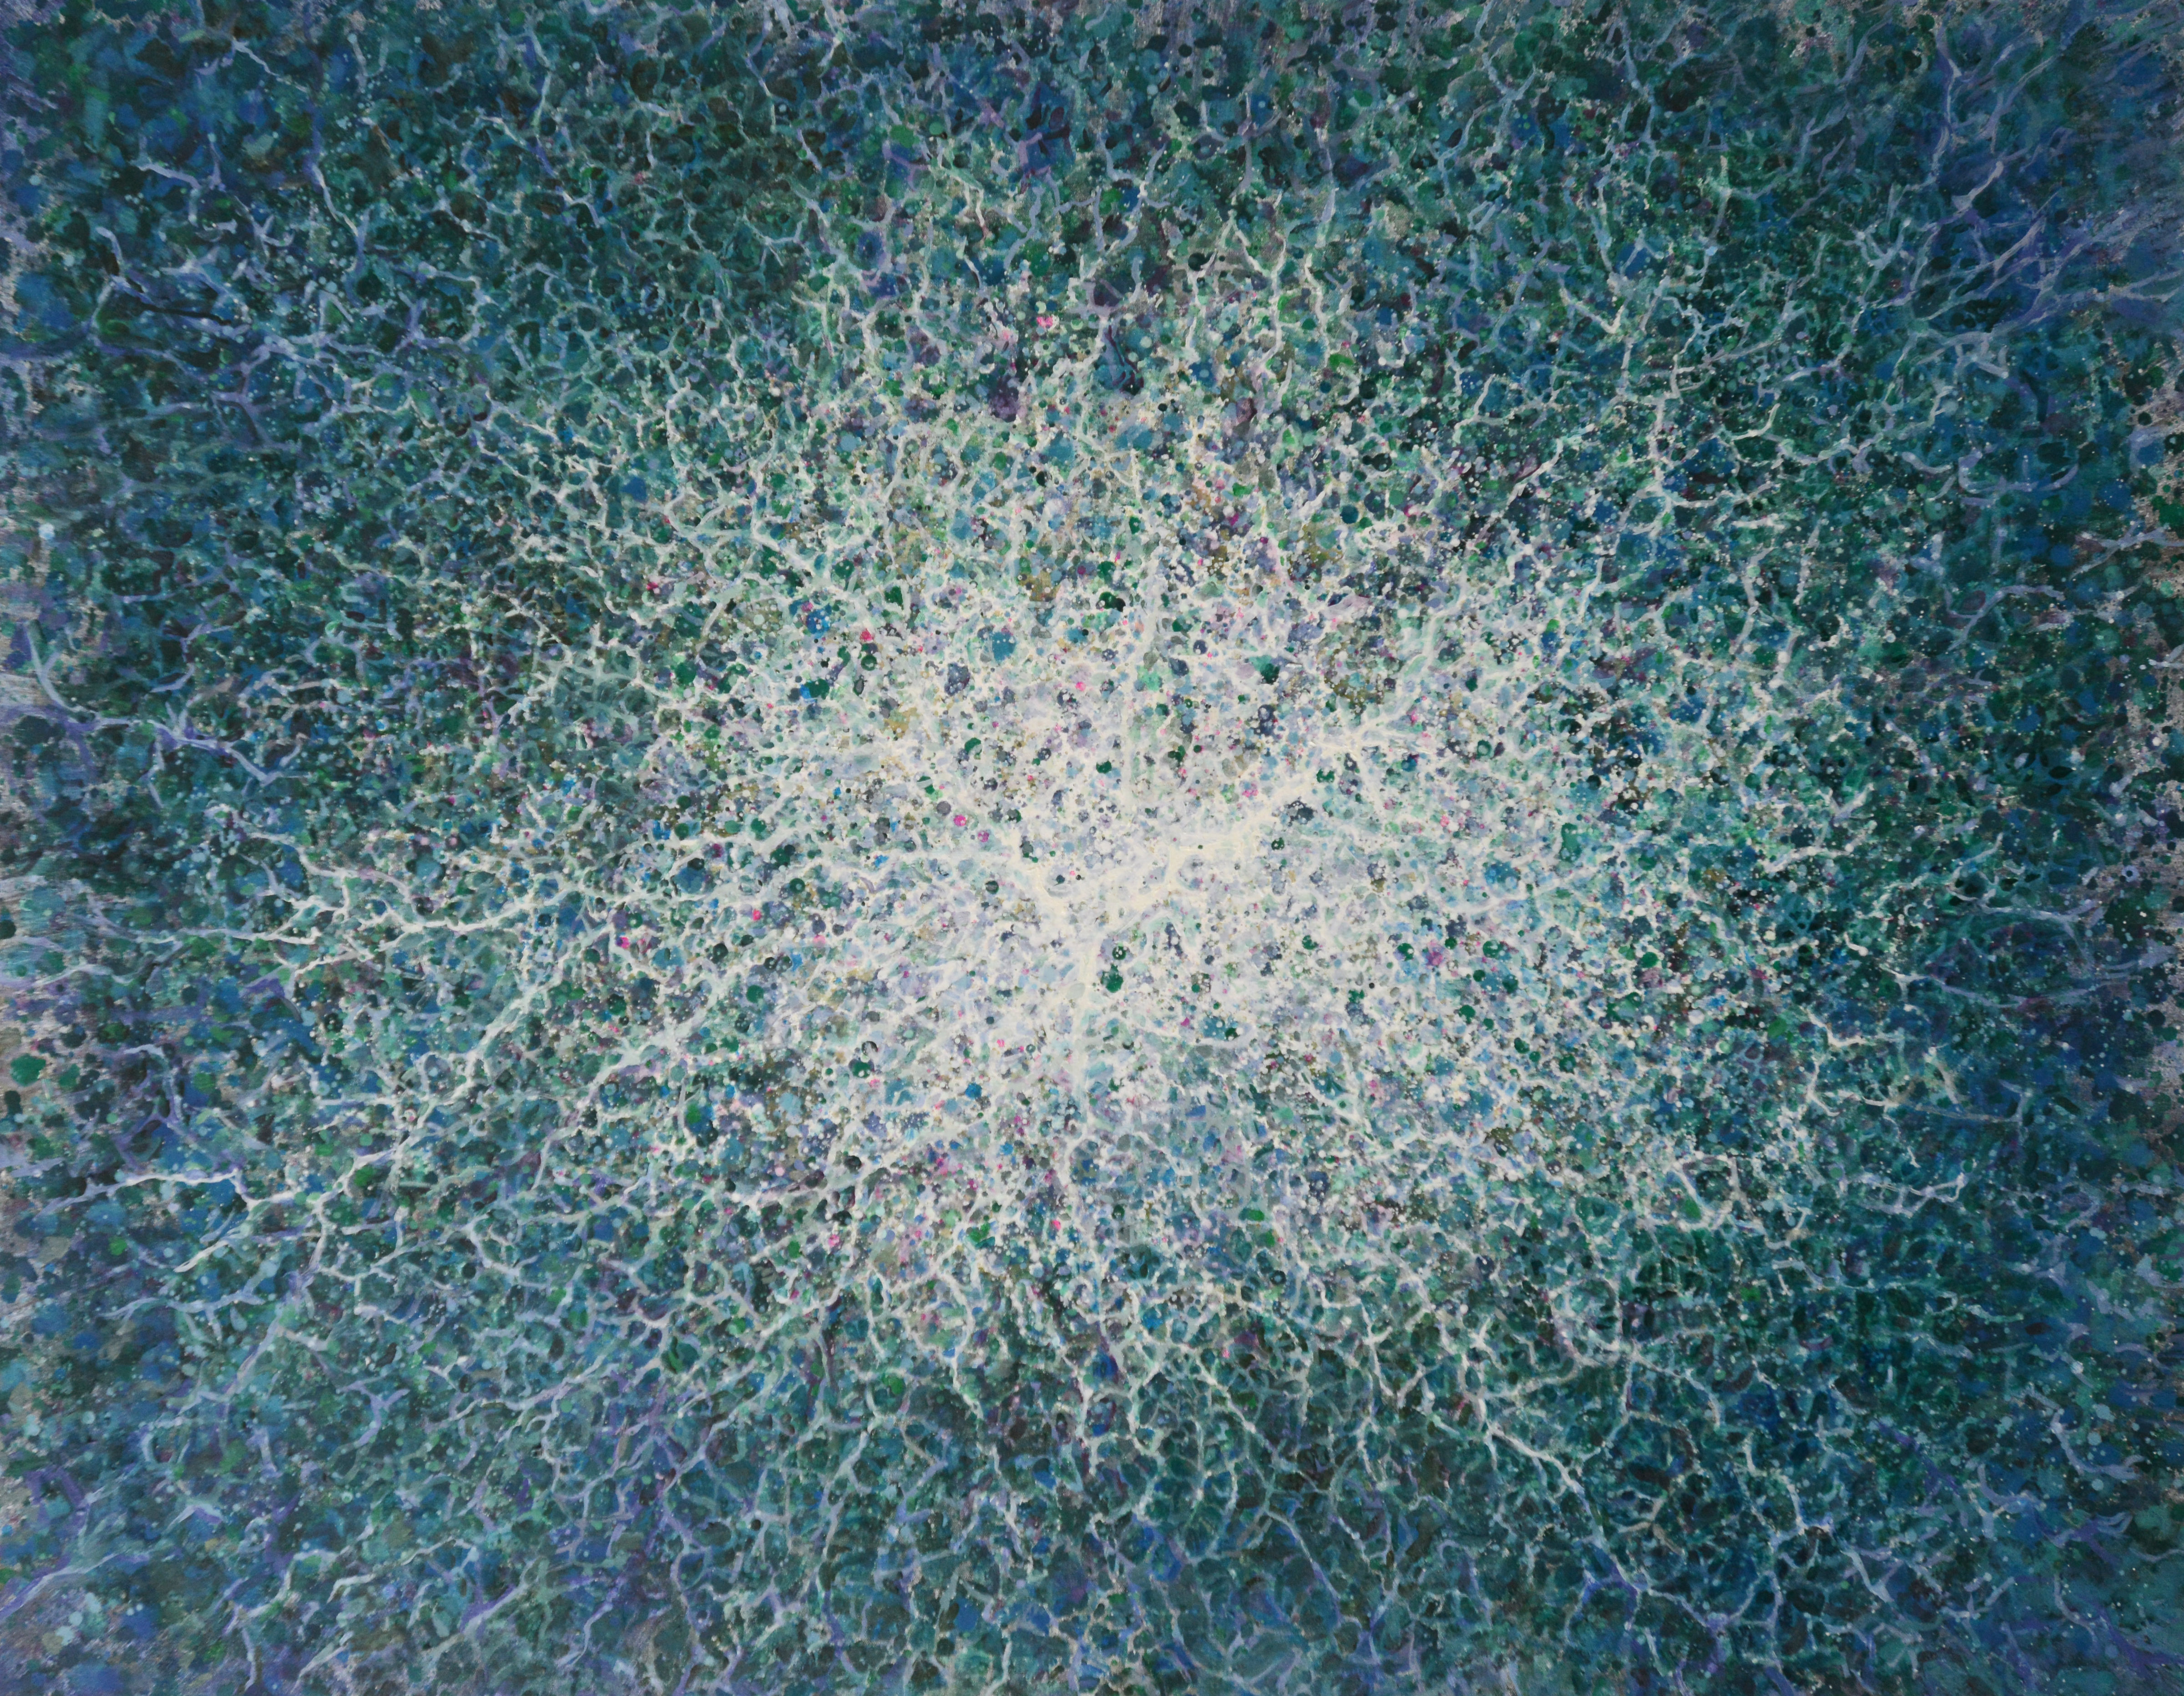 JoohyunKang, Explosion, Oil on canvas